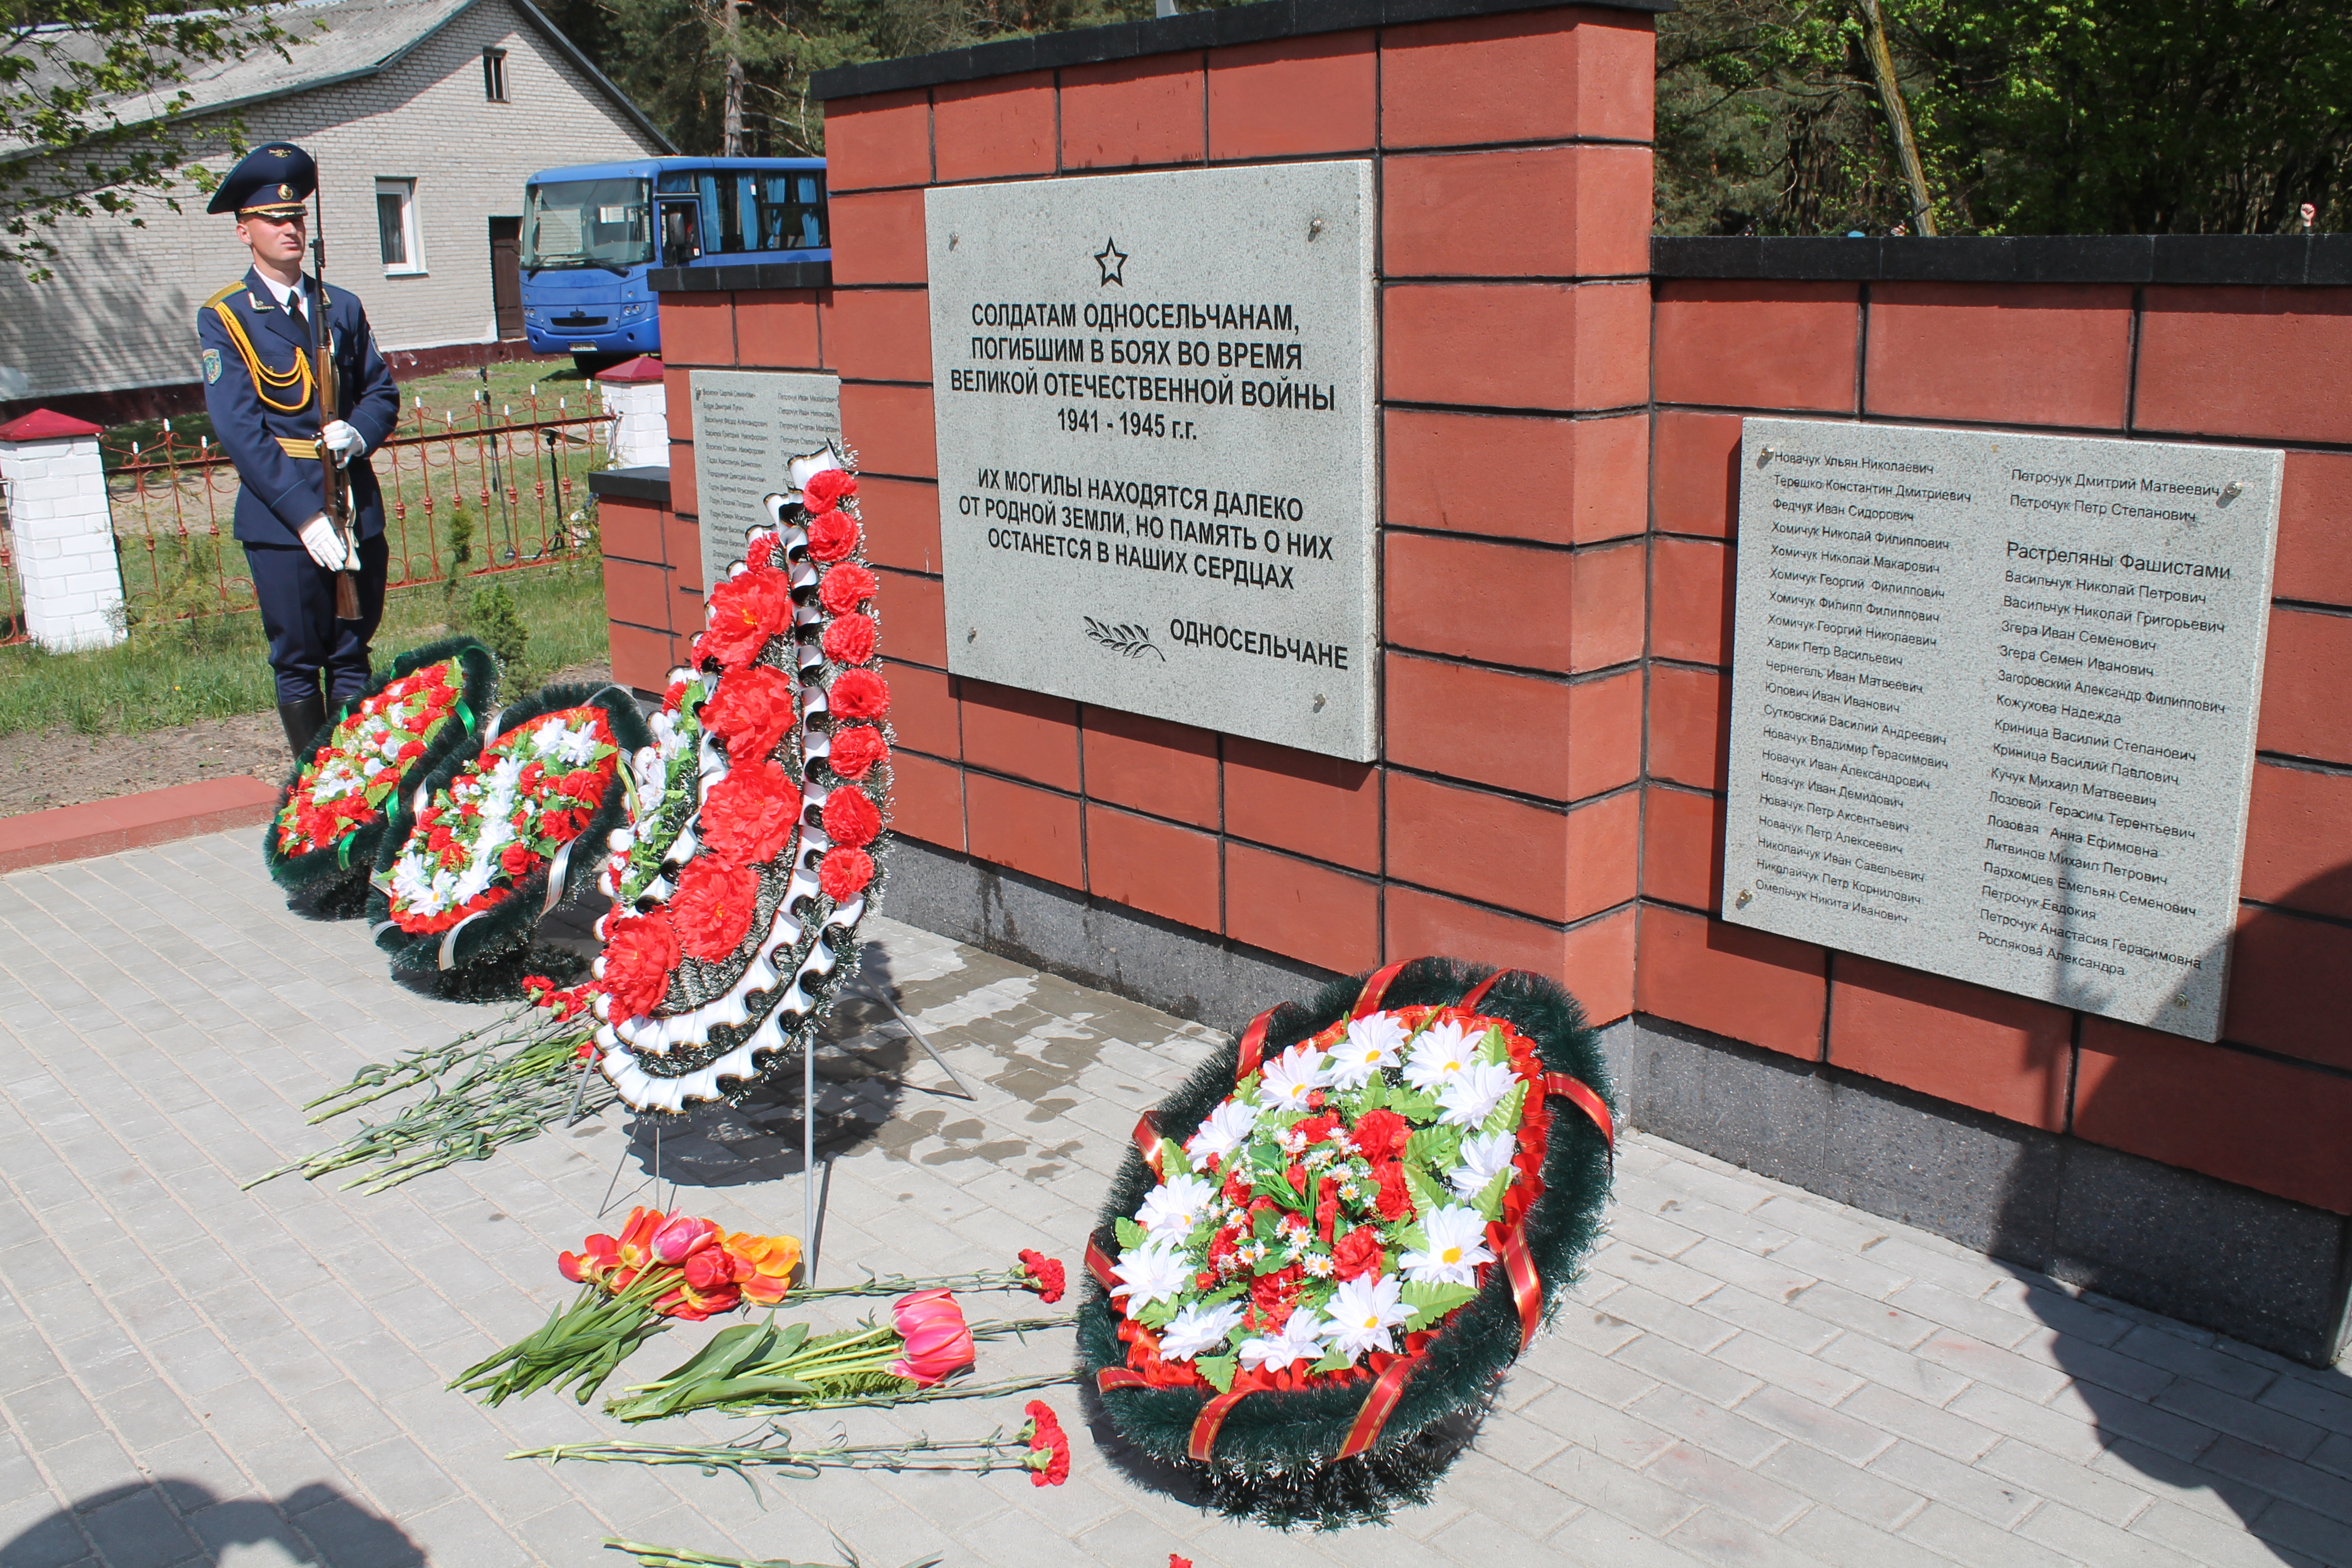 Представители КГК Брестской области приняли участие в открытии памятника, который возведен по новому проекту после рассмотрения обращения жителей дер.Приборово